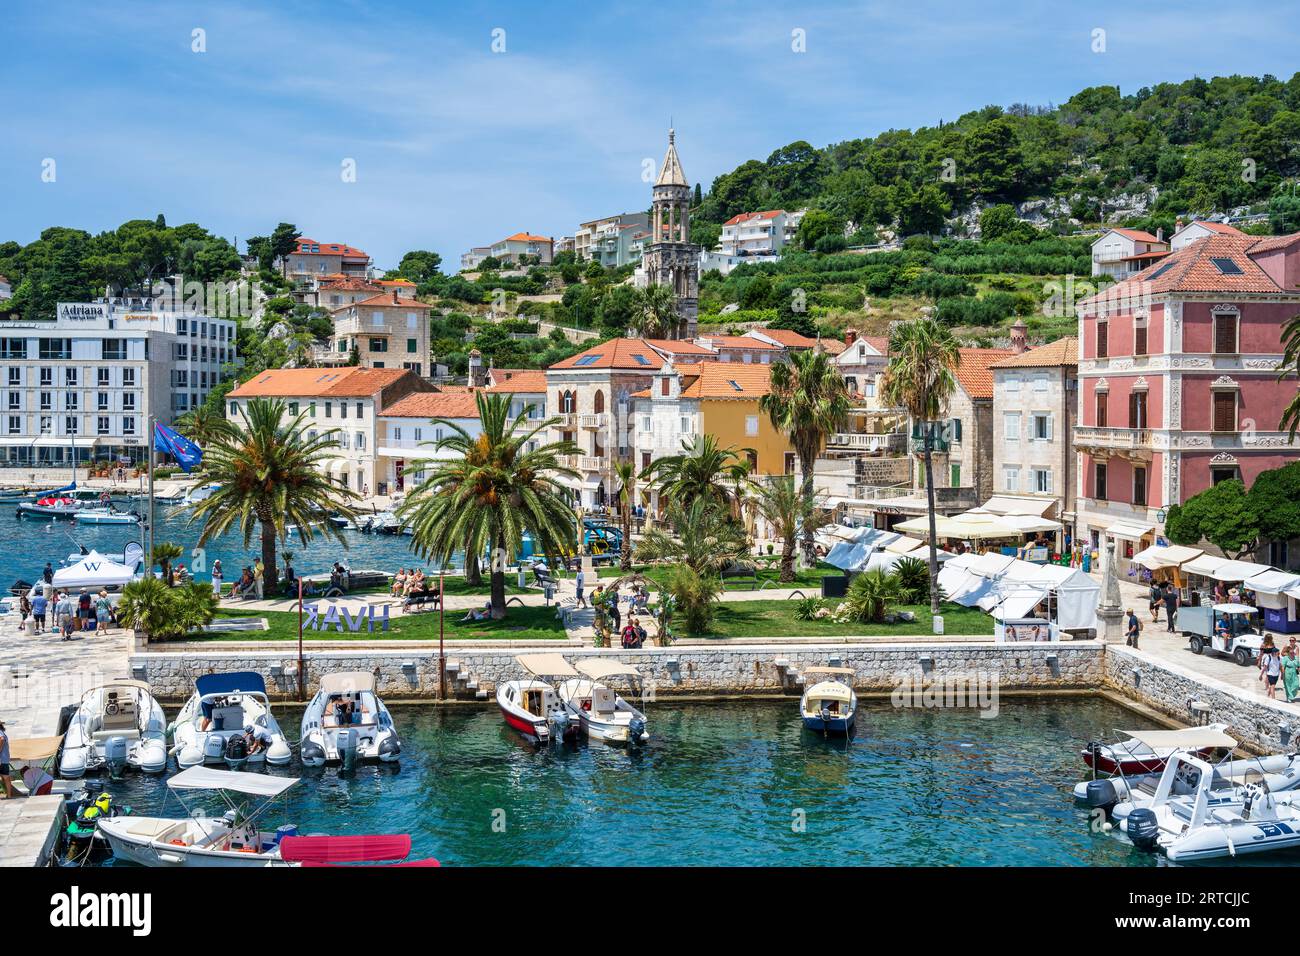 Erhöhter Blick auf Boote, die im kleinen Yachthafen im Hafengebiet von Hvar Town (Grad Hvar) auf der Insel Hvar an der dalmatinischen Küste von Kroatien vertäut sind Stockfoto